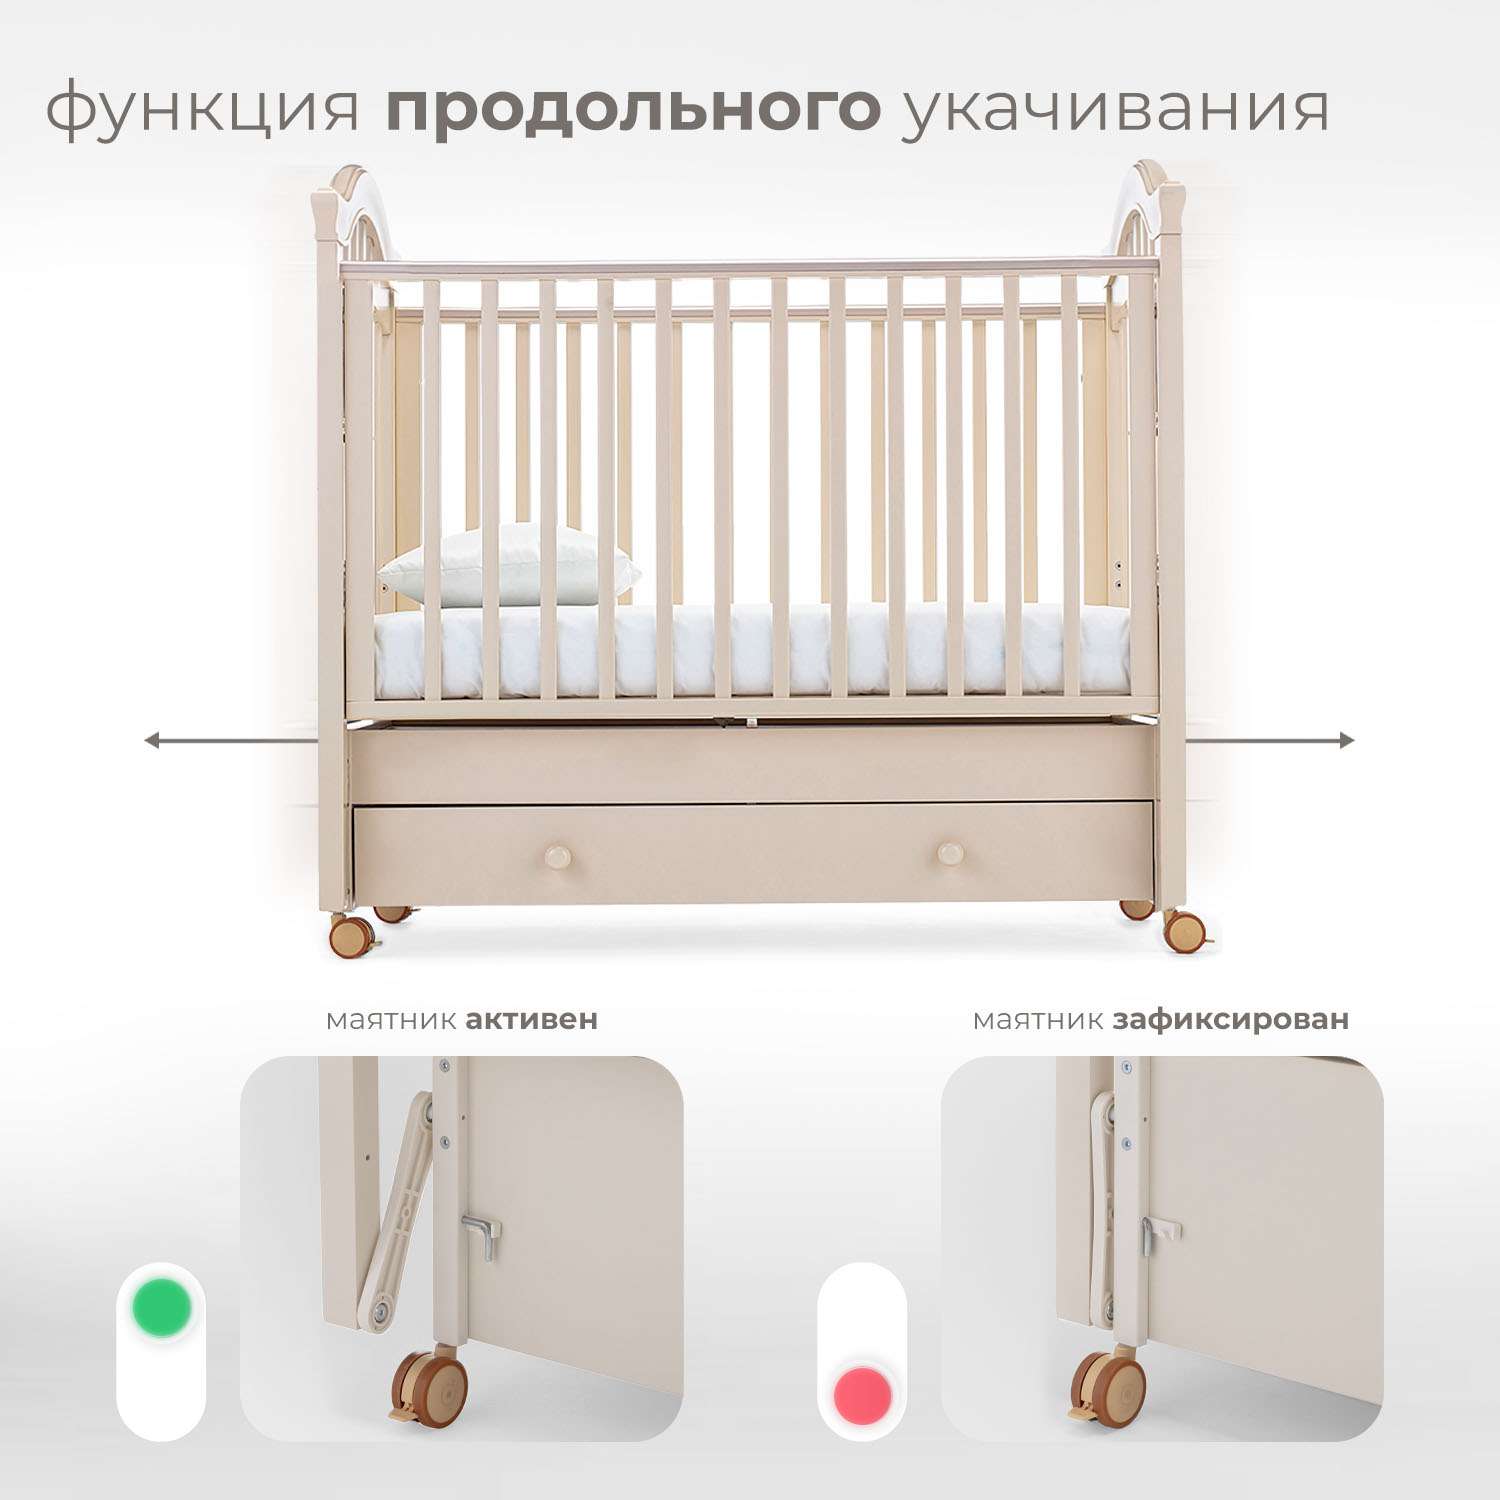 Детская кроватка Nuovita Perla Swing прямоугольная, продольный маятник (слоновая кость) - фото 4